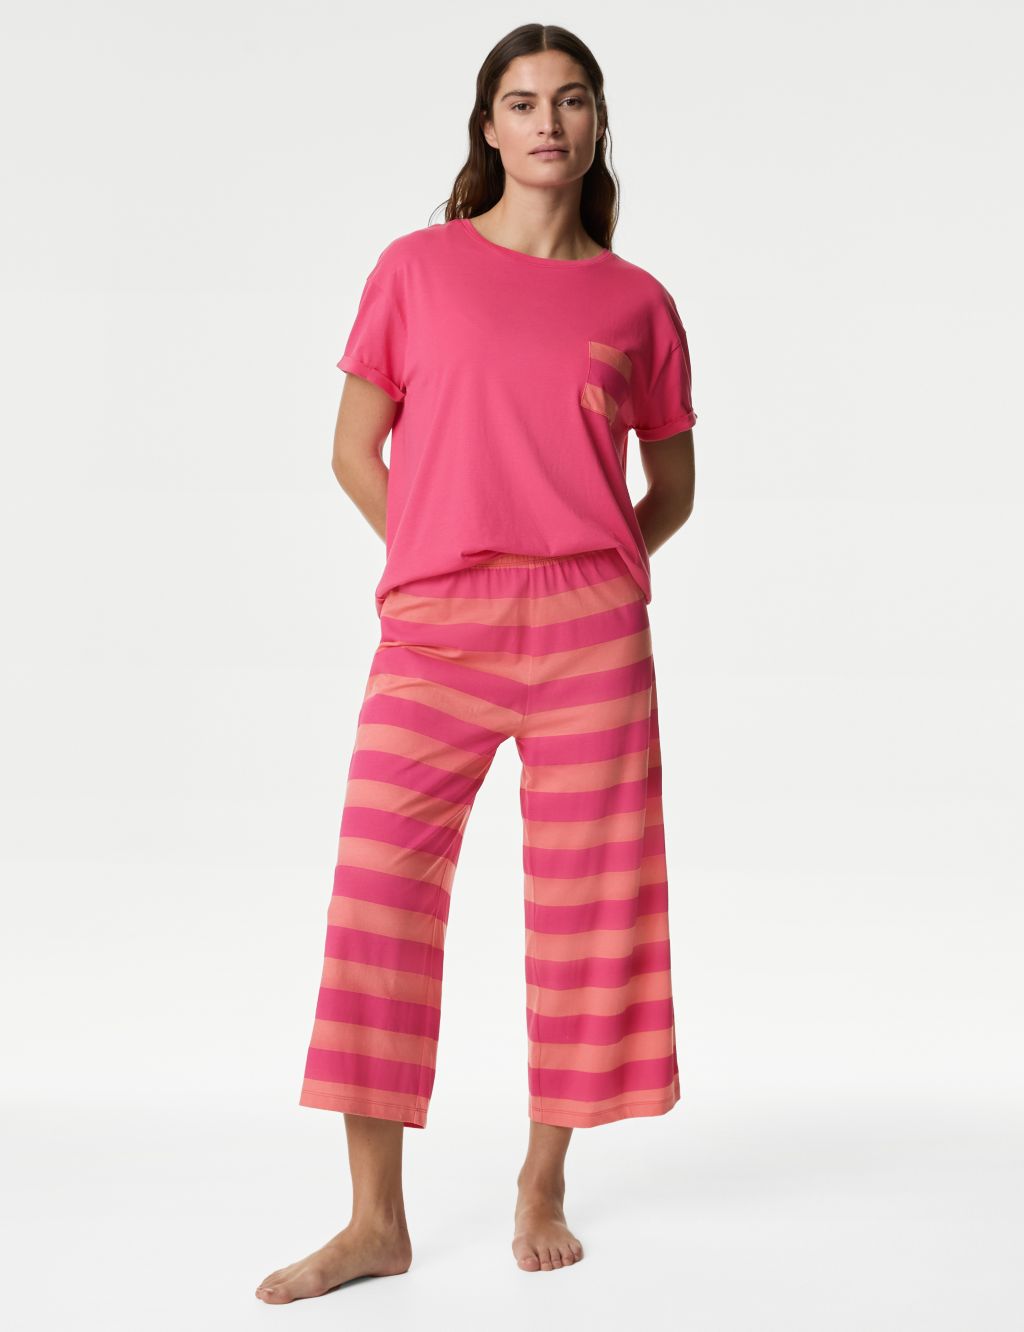 Women's Pink Nightwear